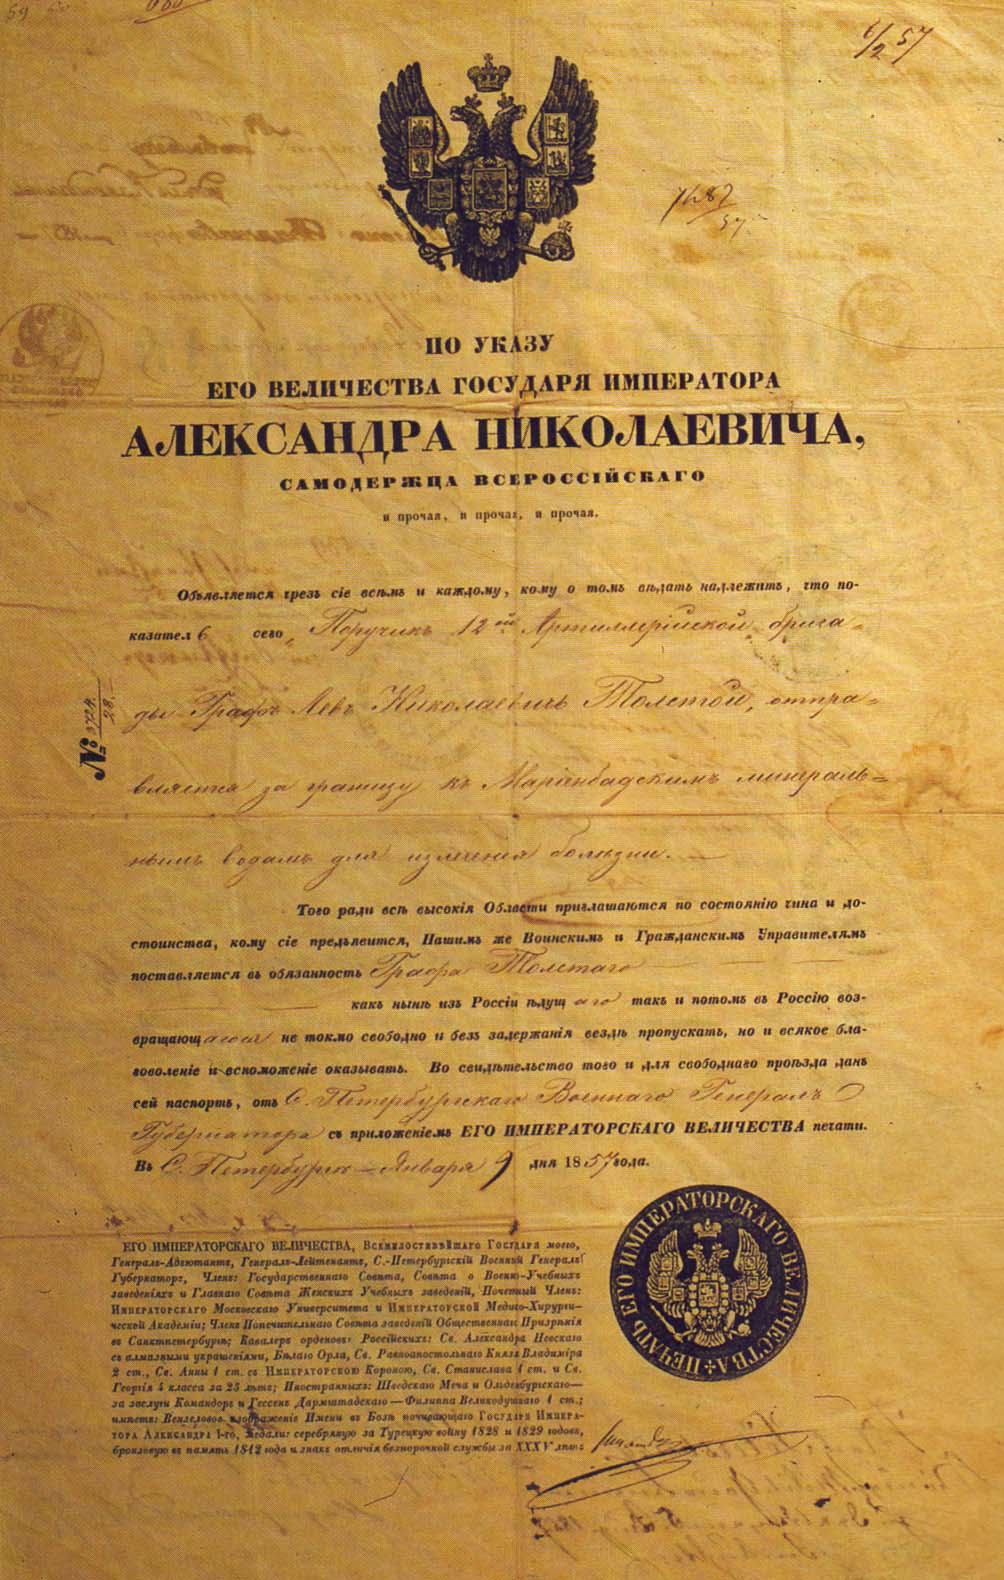 Заграничный паспорт Л.Н. Толстого, выданный ему 9 января 1857 г. в Петербурге.